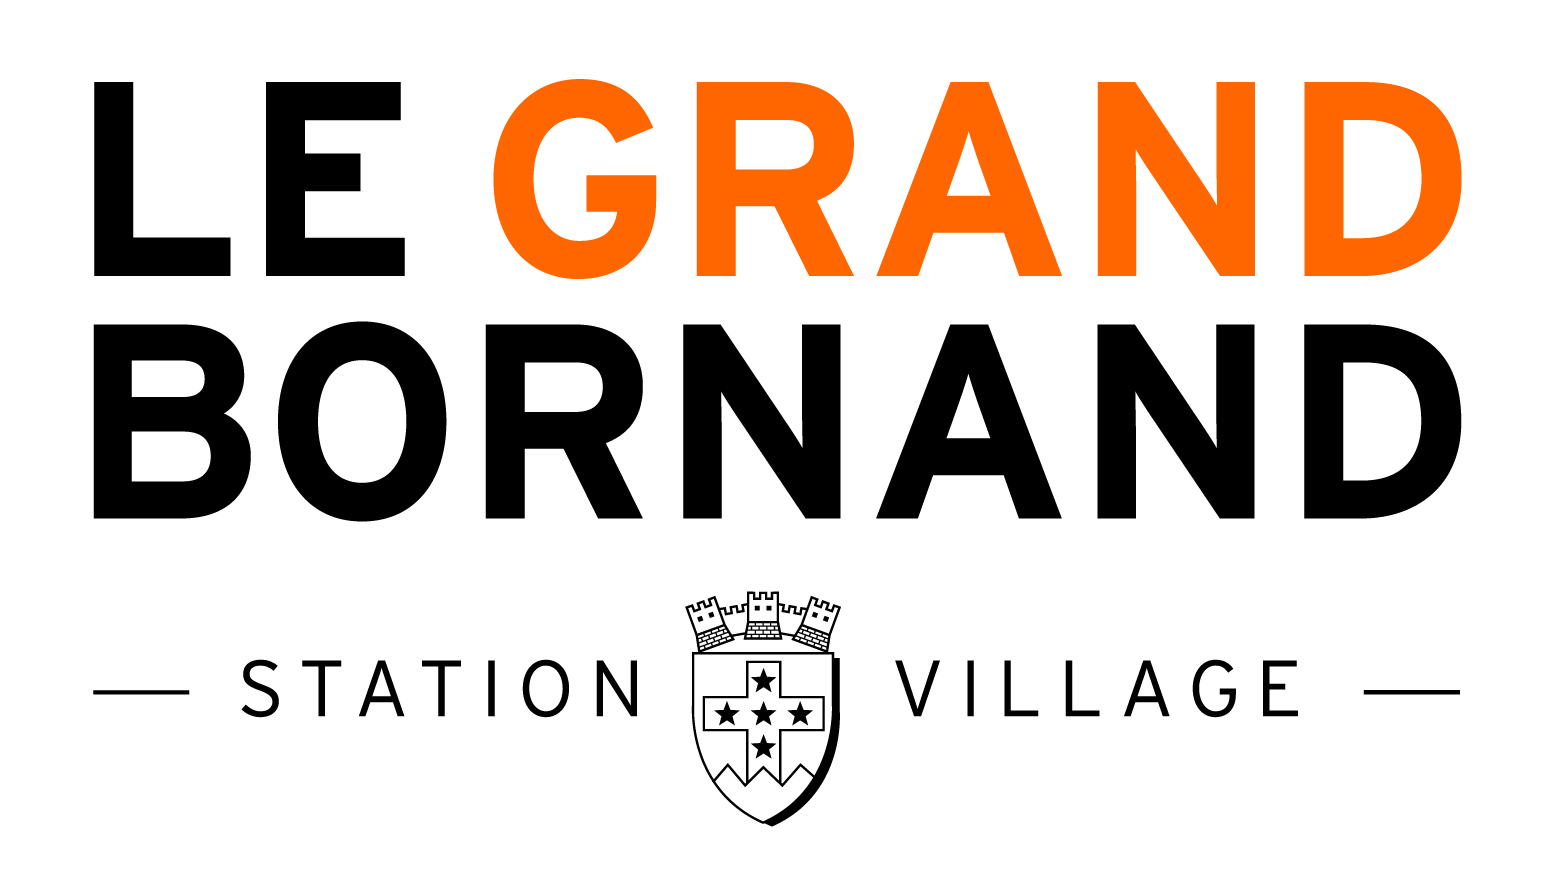 Village Grand Bornand